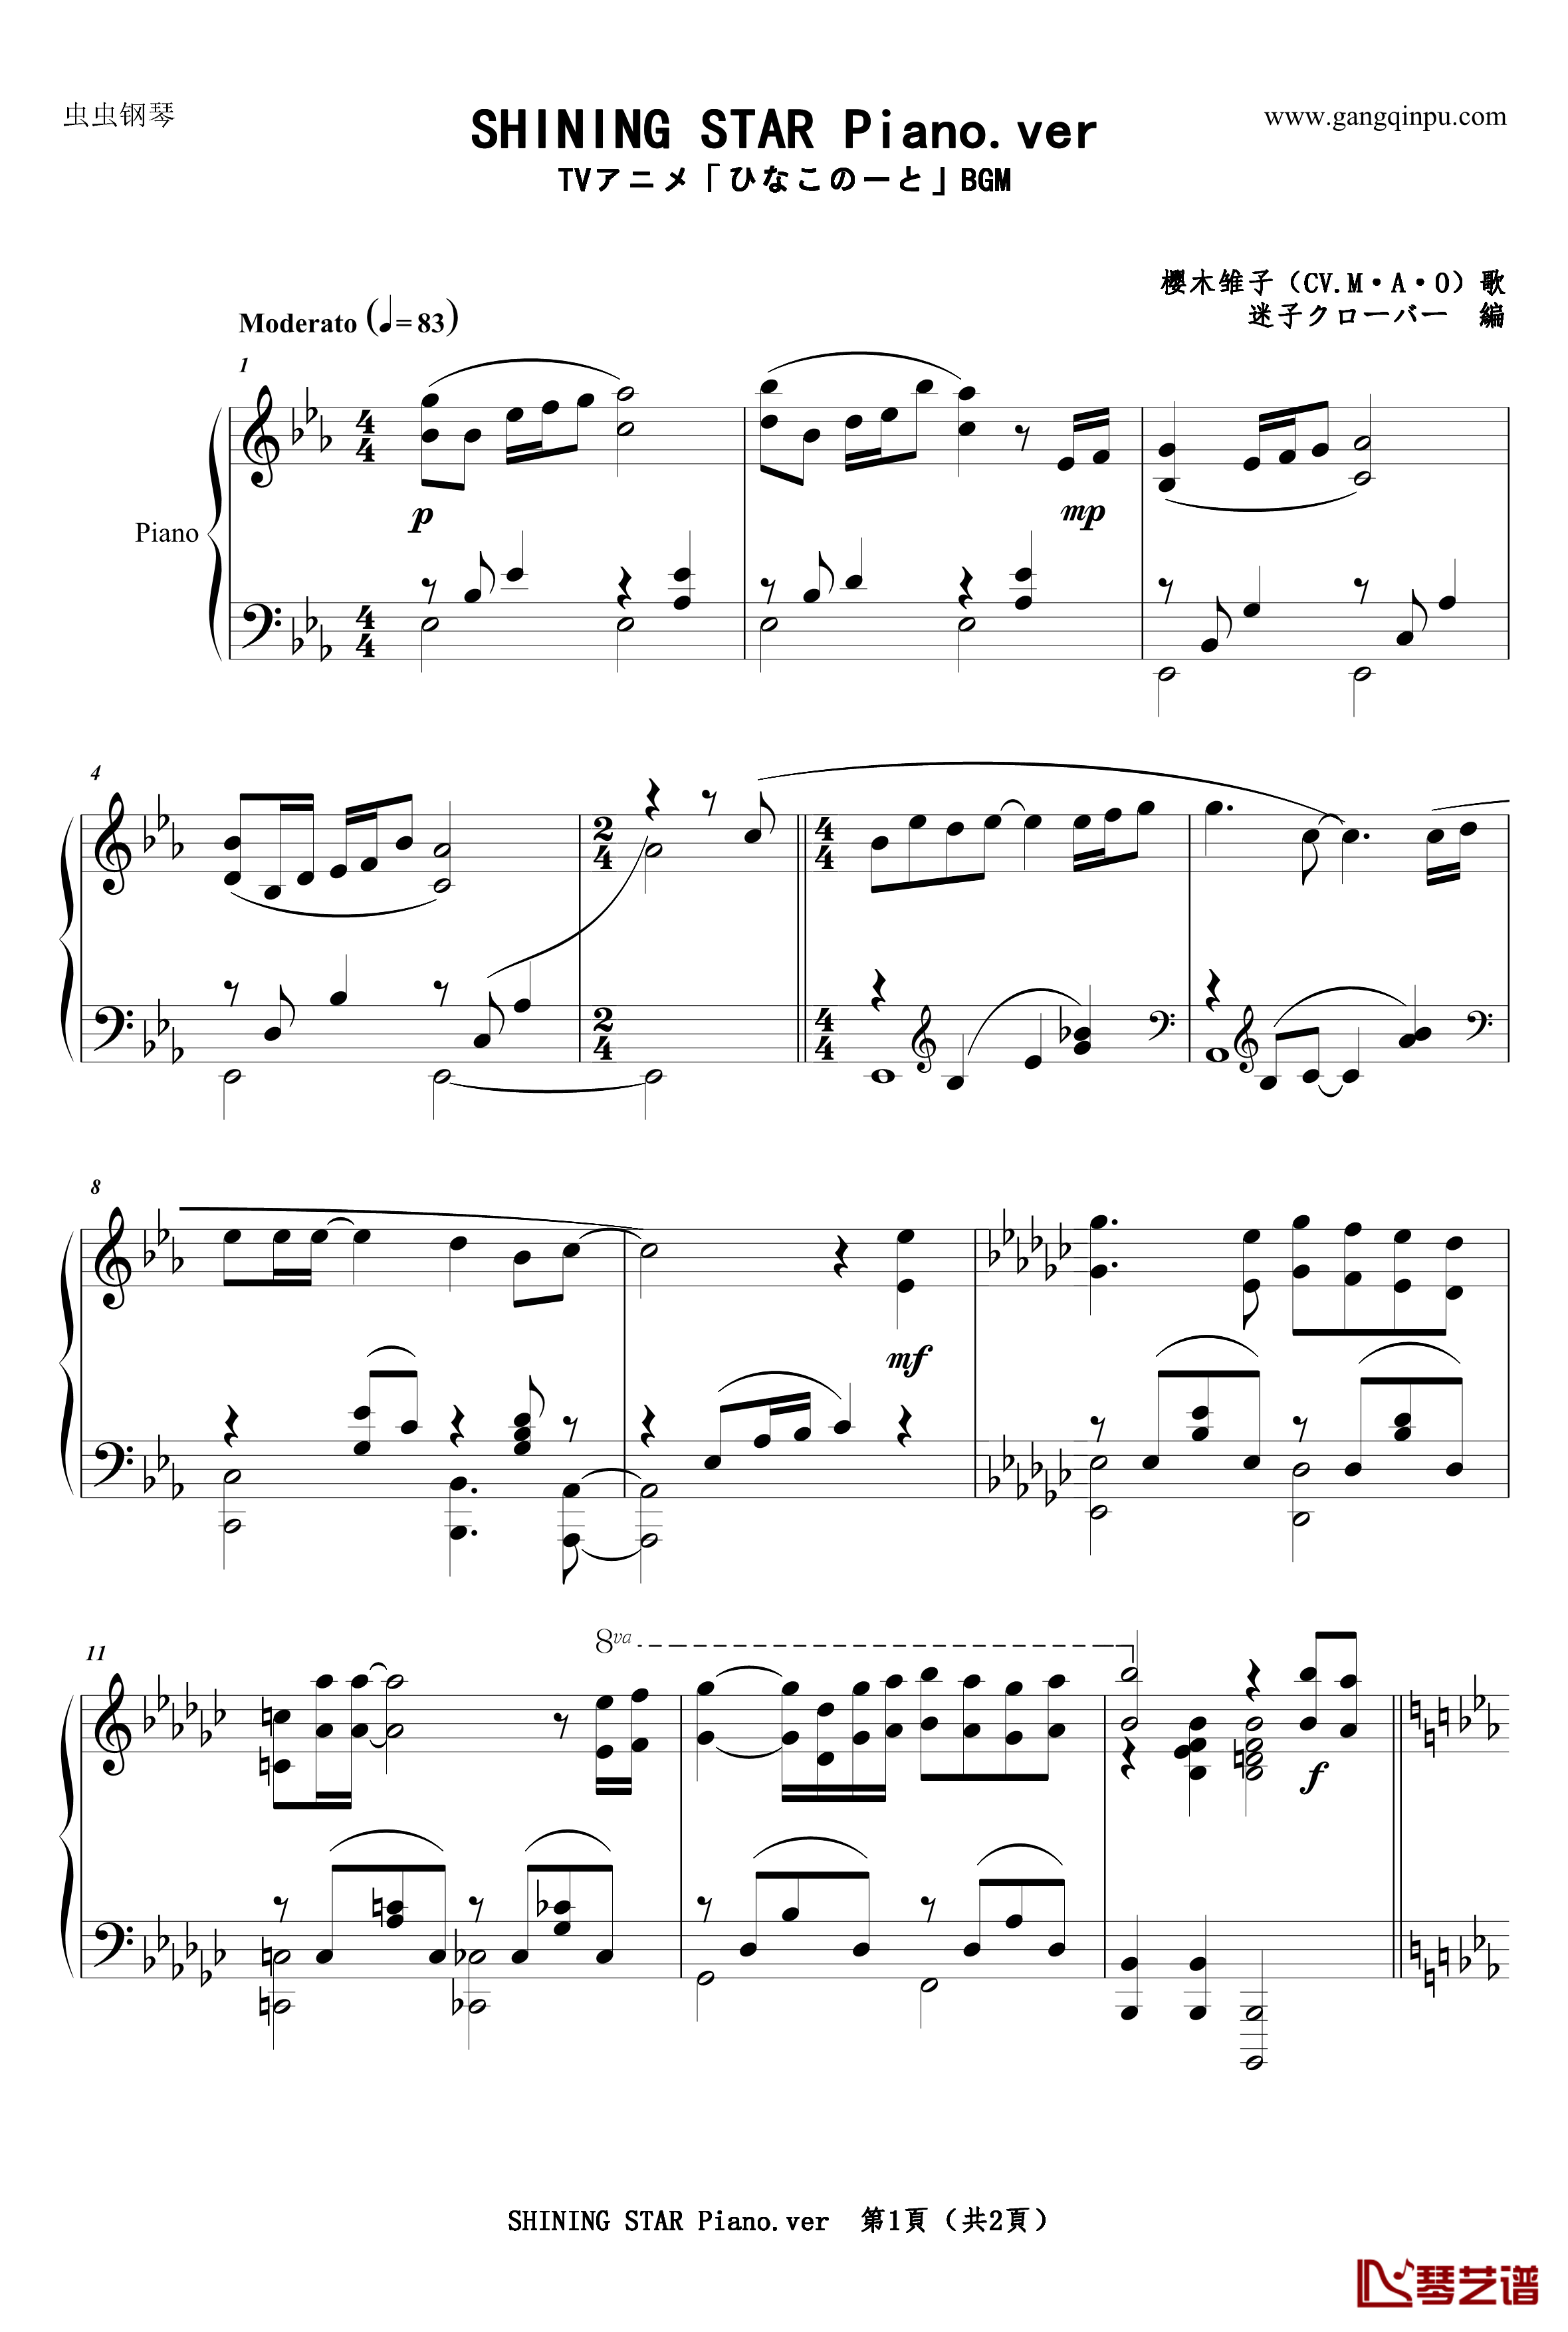 OST SHINING STAR Piano ver钢琴谱-雏子的笔记1